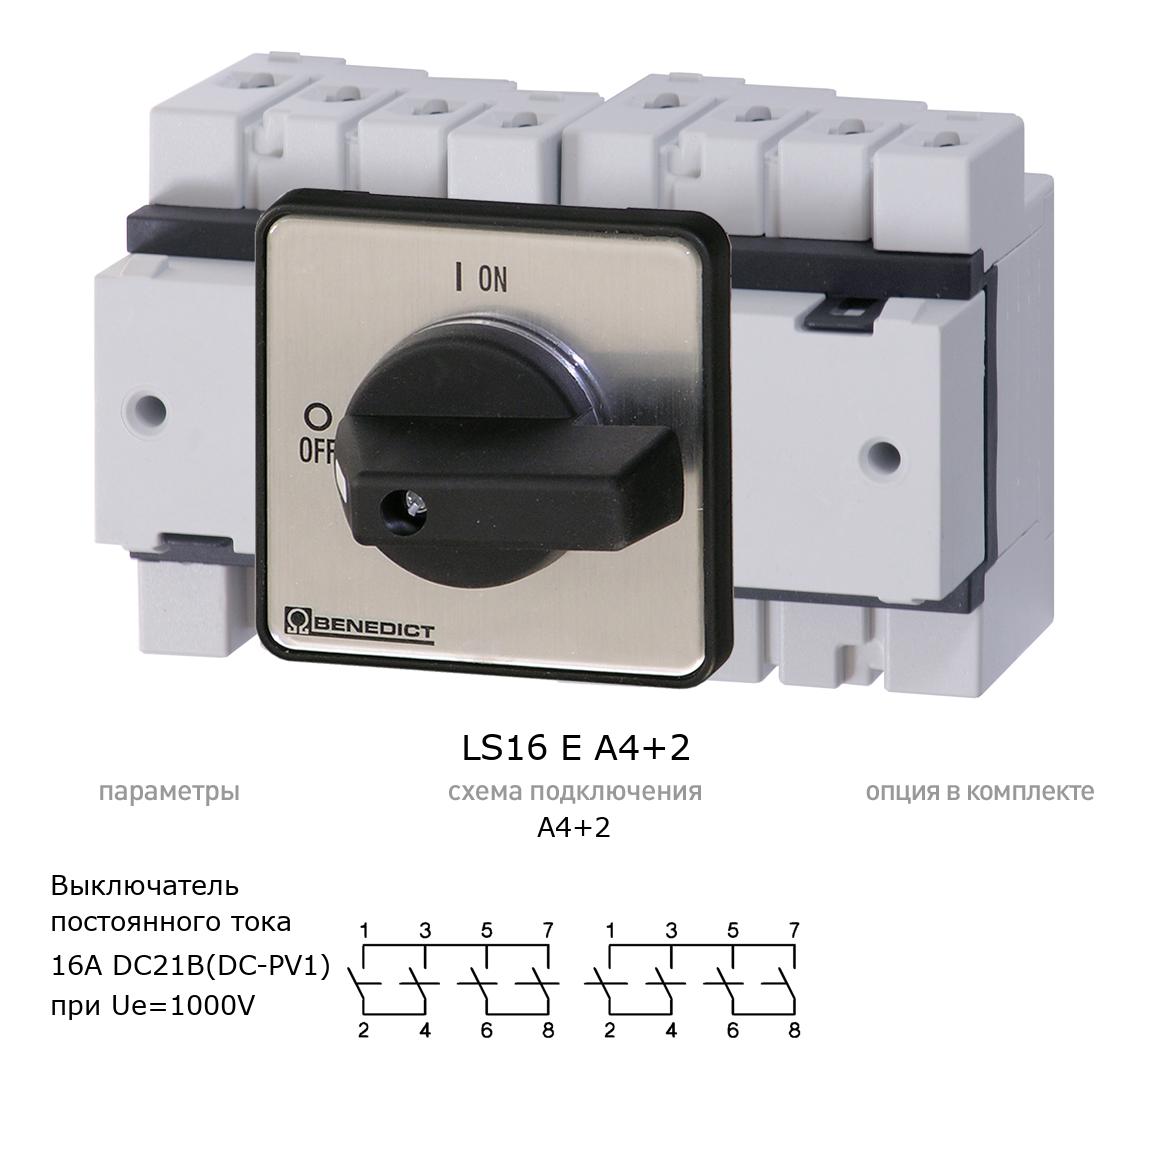 Кулачковый переключатель для постоянного тока (DC) LS16 E A4+2 BENEDICT